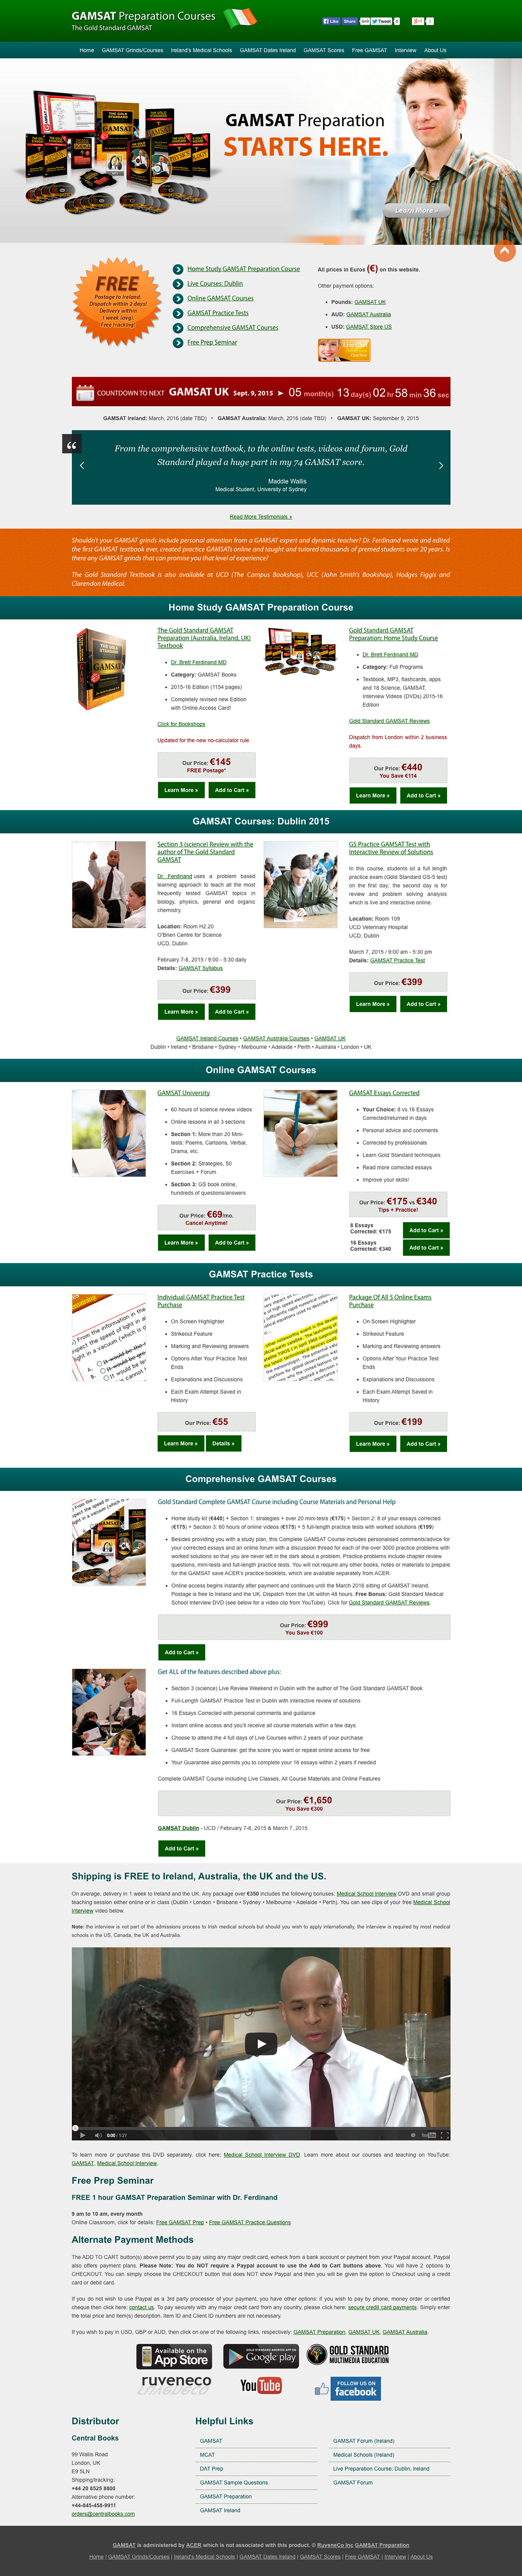 responsive website mobile website gamsat gamsat preparation gamsat courses Website Design website development